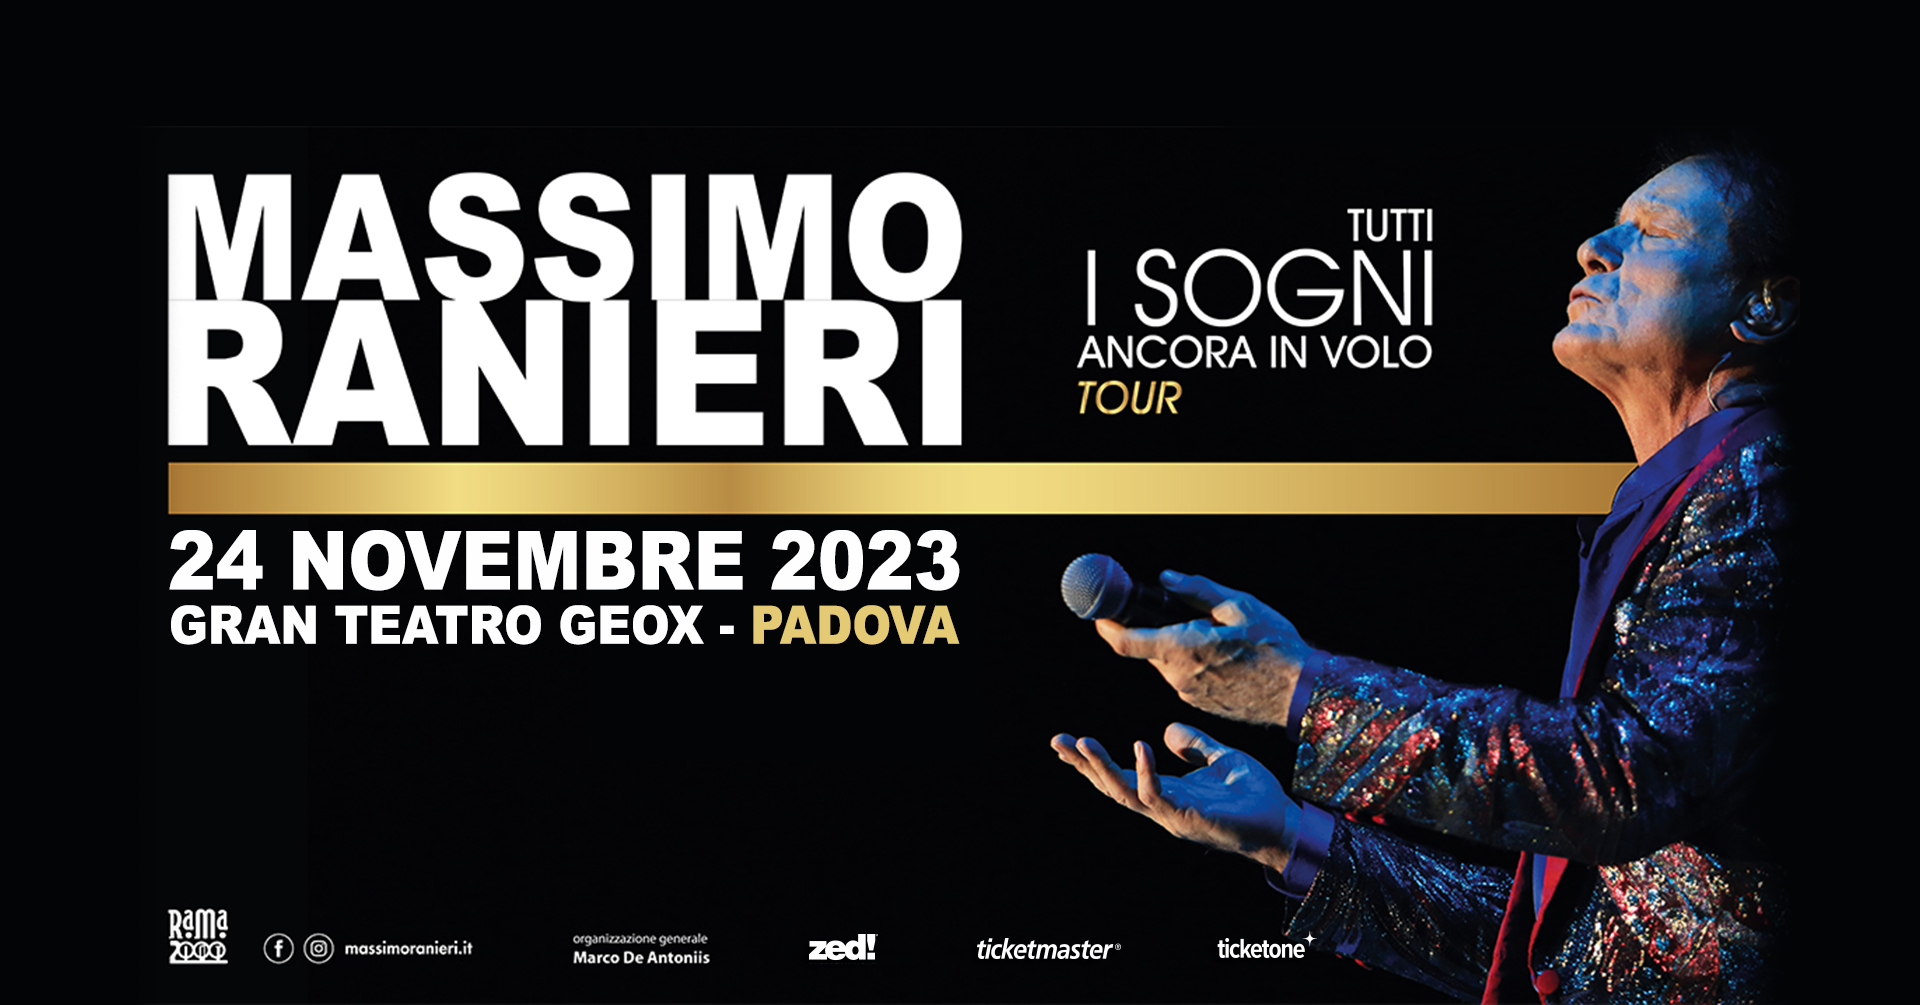 Massimo Ranieri, Tutti i sogni ancora in volo, Padova, Gran Teatro Geox